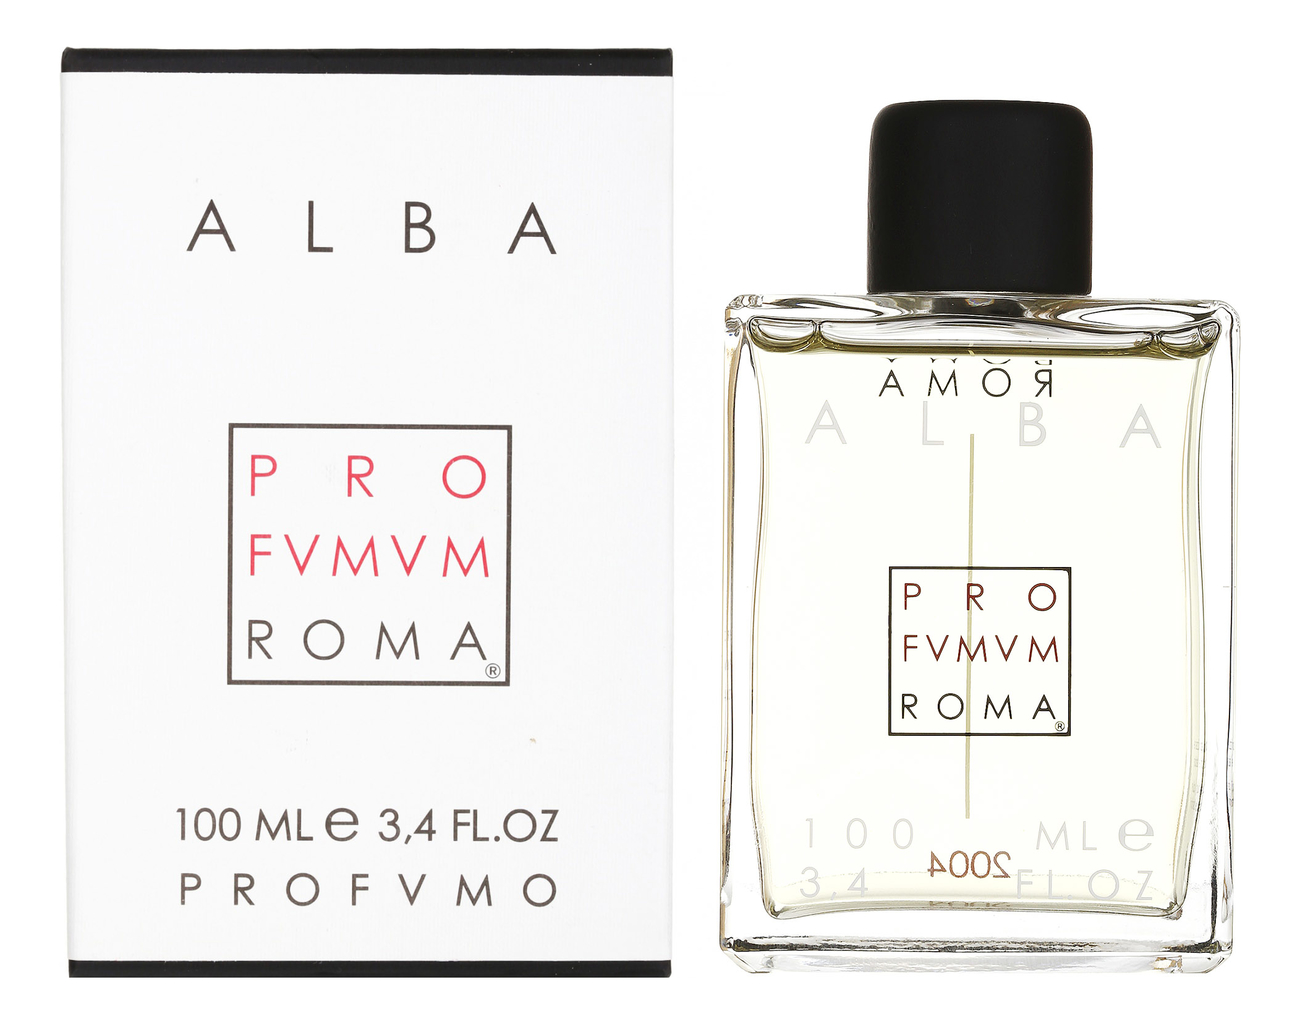 Alba: парфюмерная вода 100мл